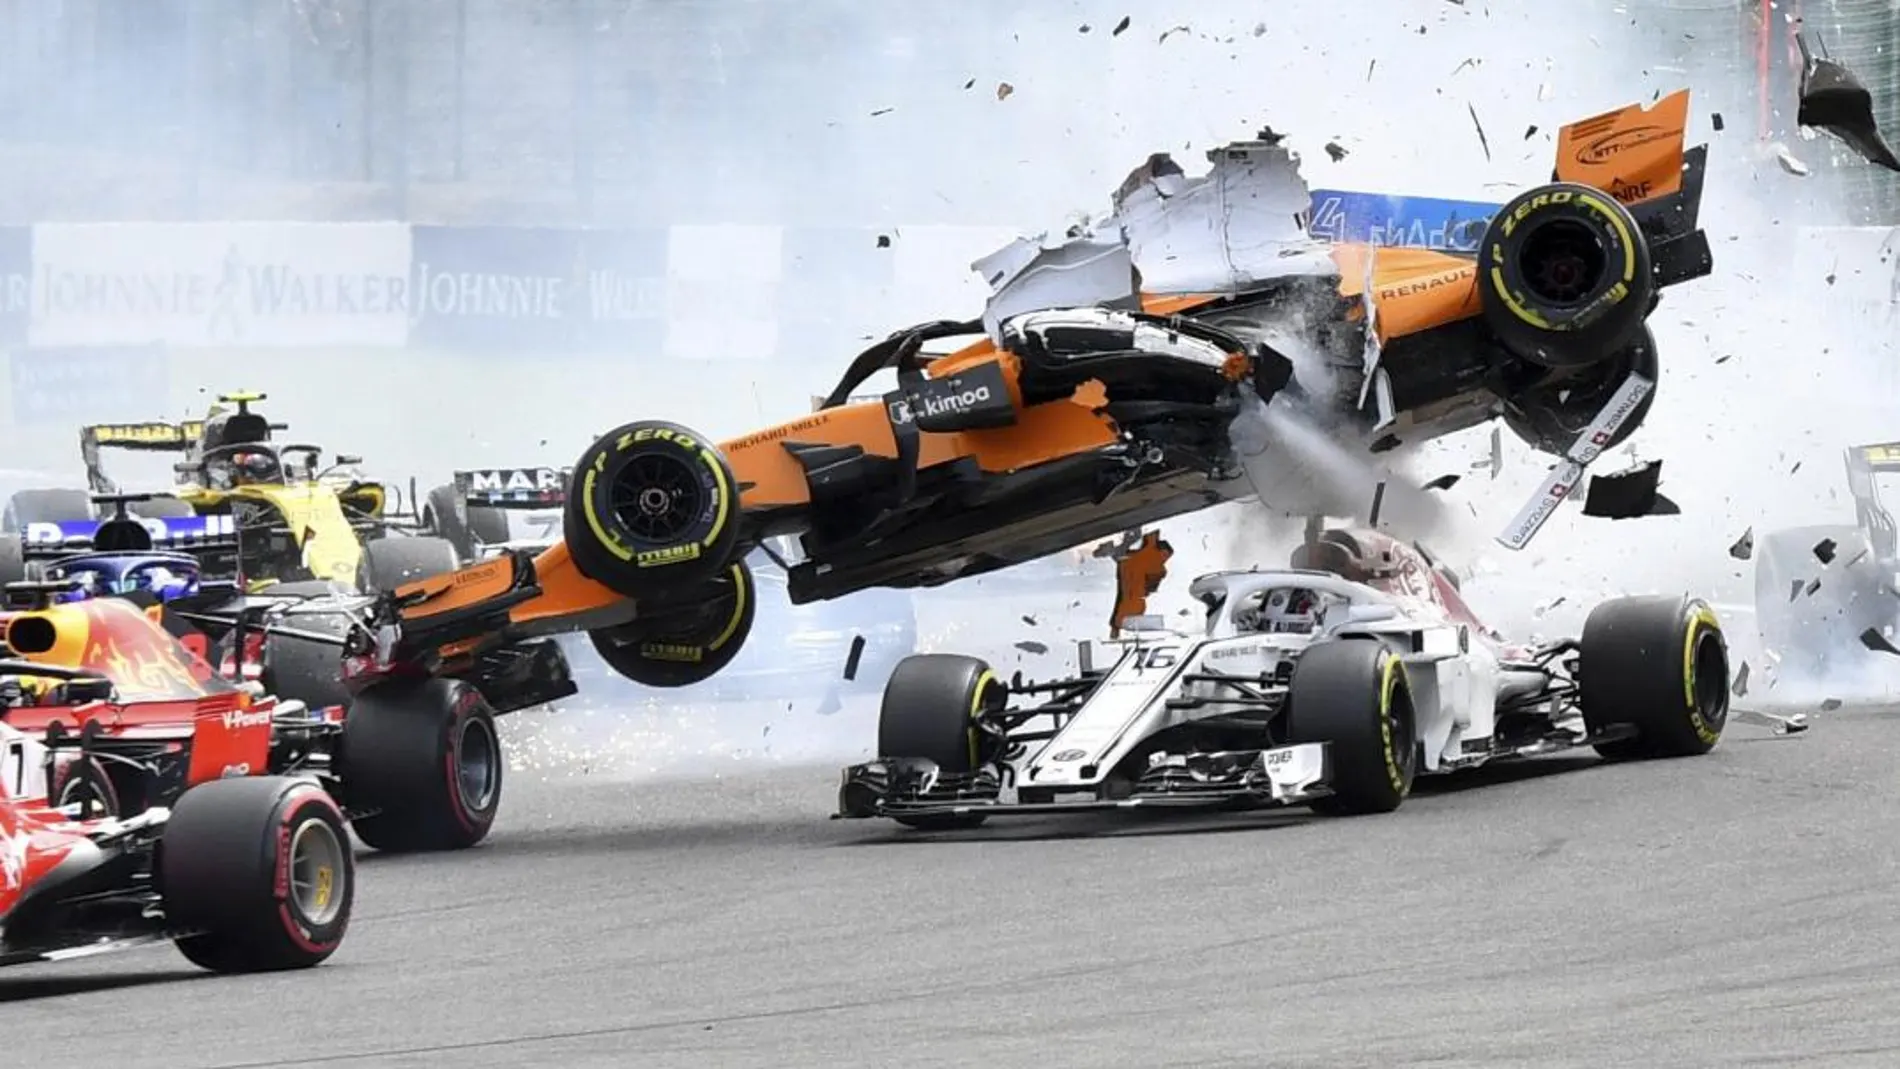 El coche de Alonso saltó por las aires tras chocar /Foto: Ap